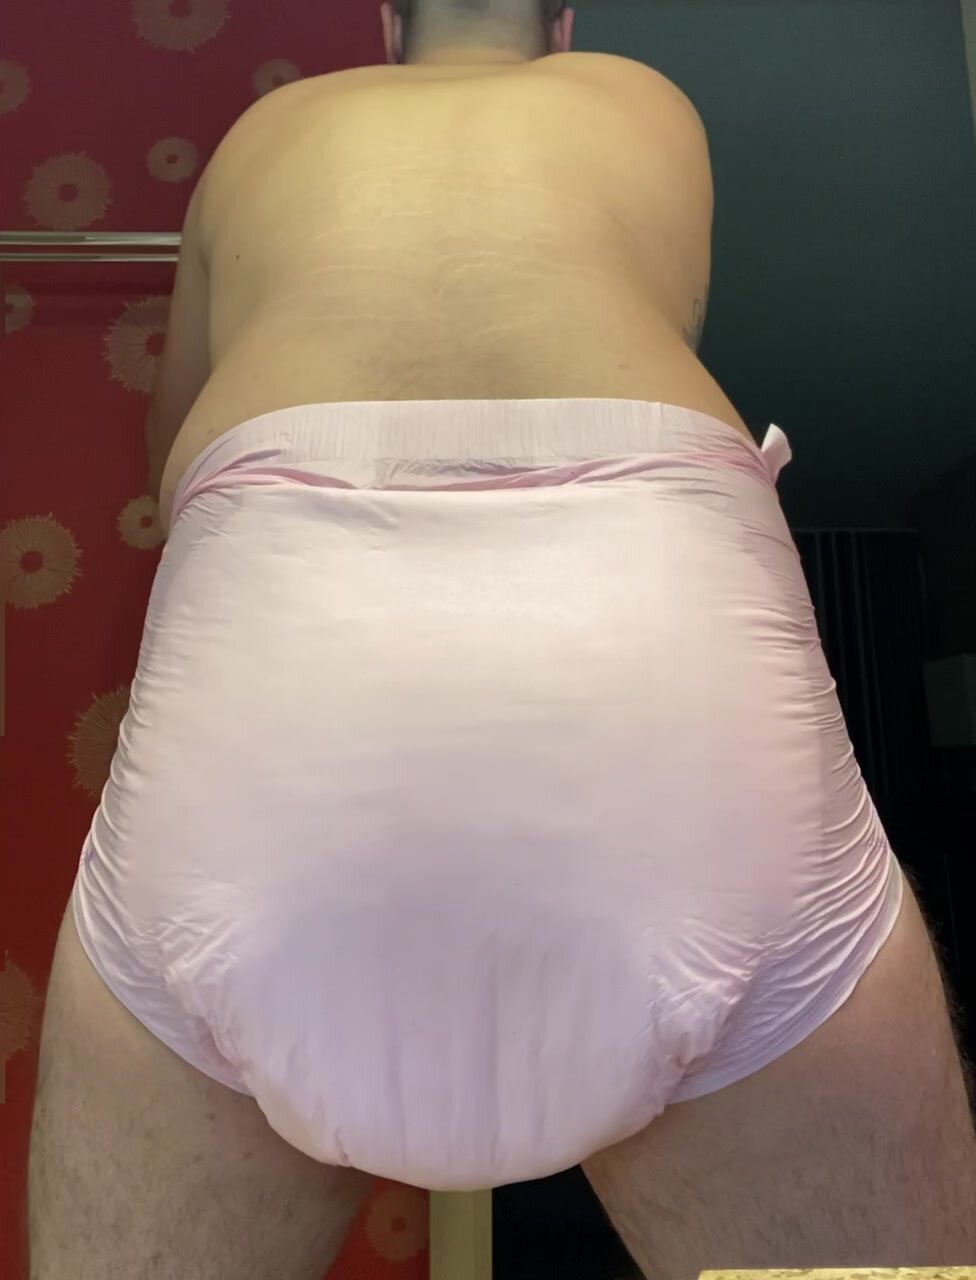 Huge poop in pink diaper